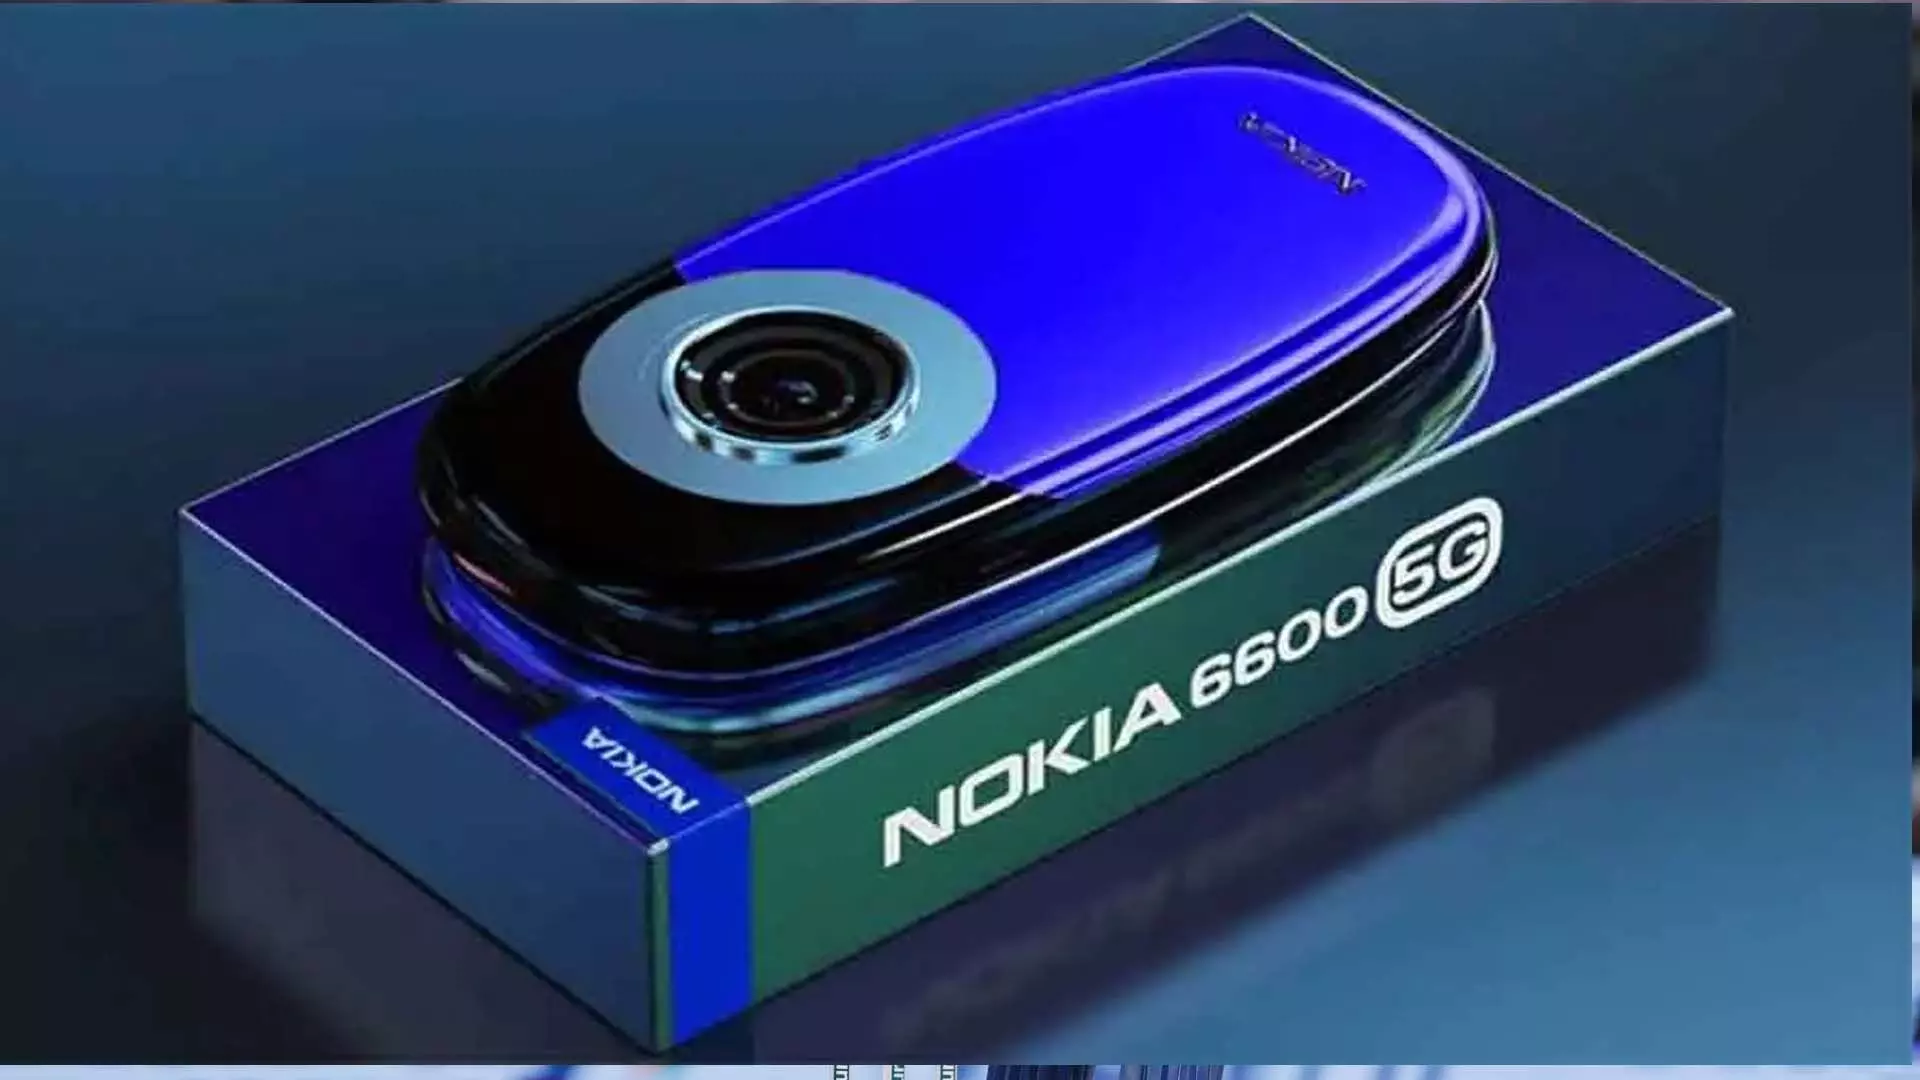 Nokia 6600 5G: इसमें मिल रही 12GB RAM, साथ में 108MP का कैमरा